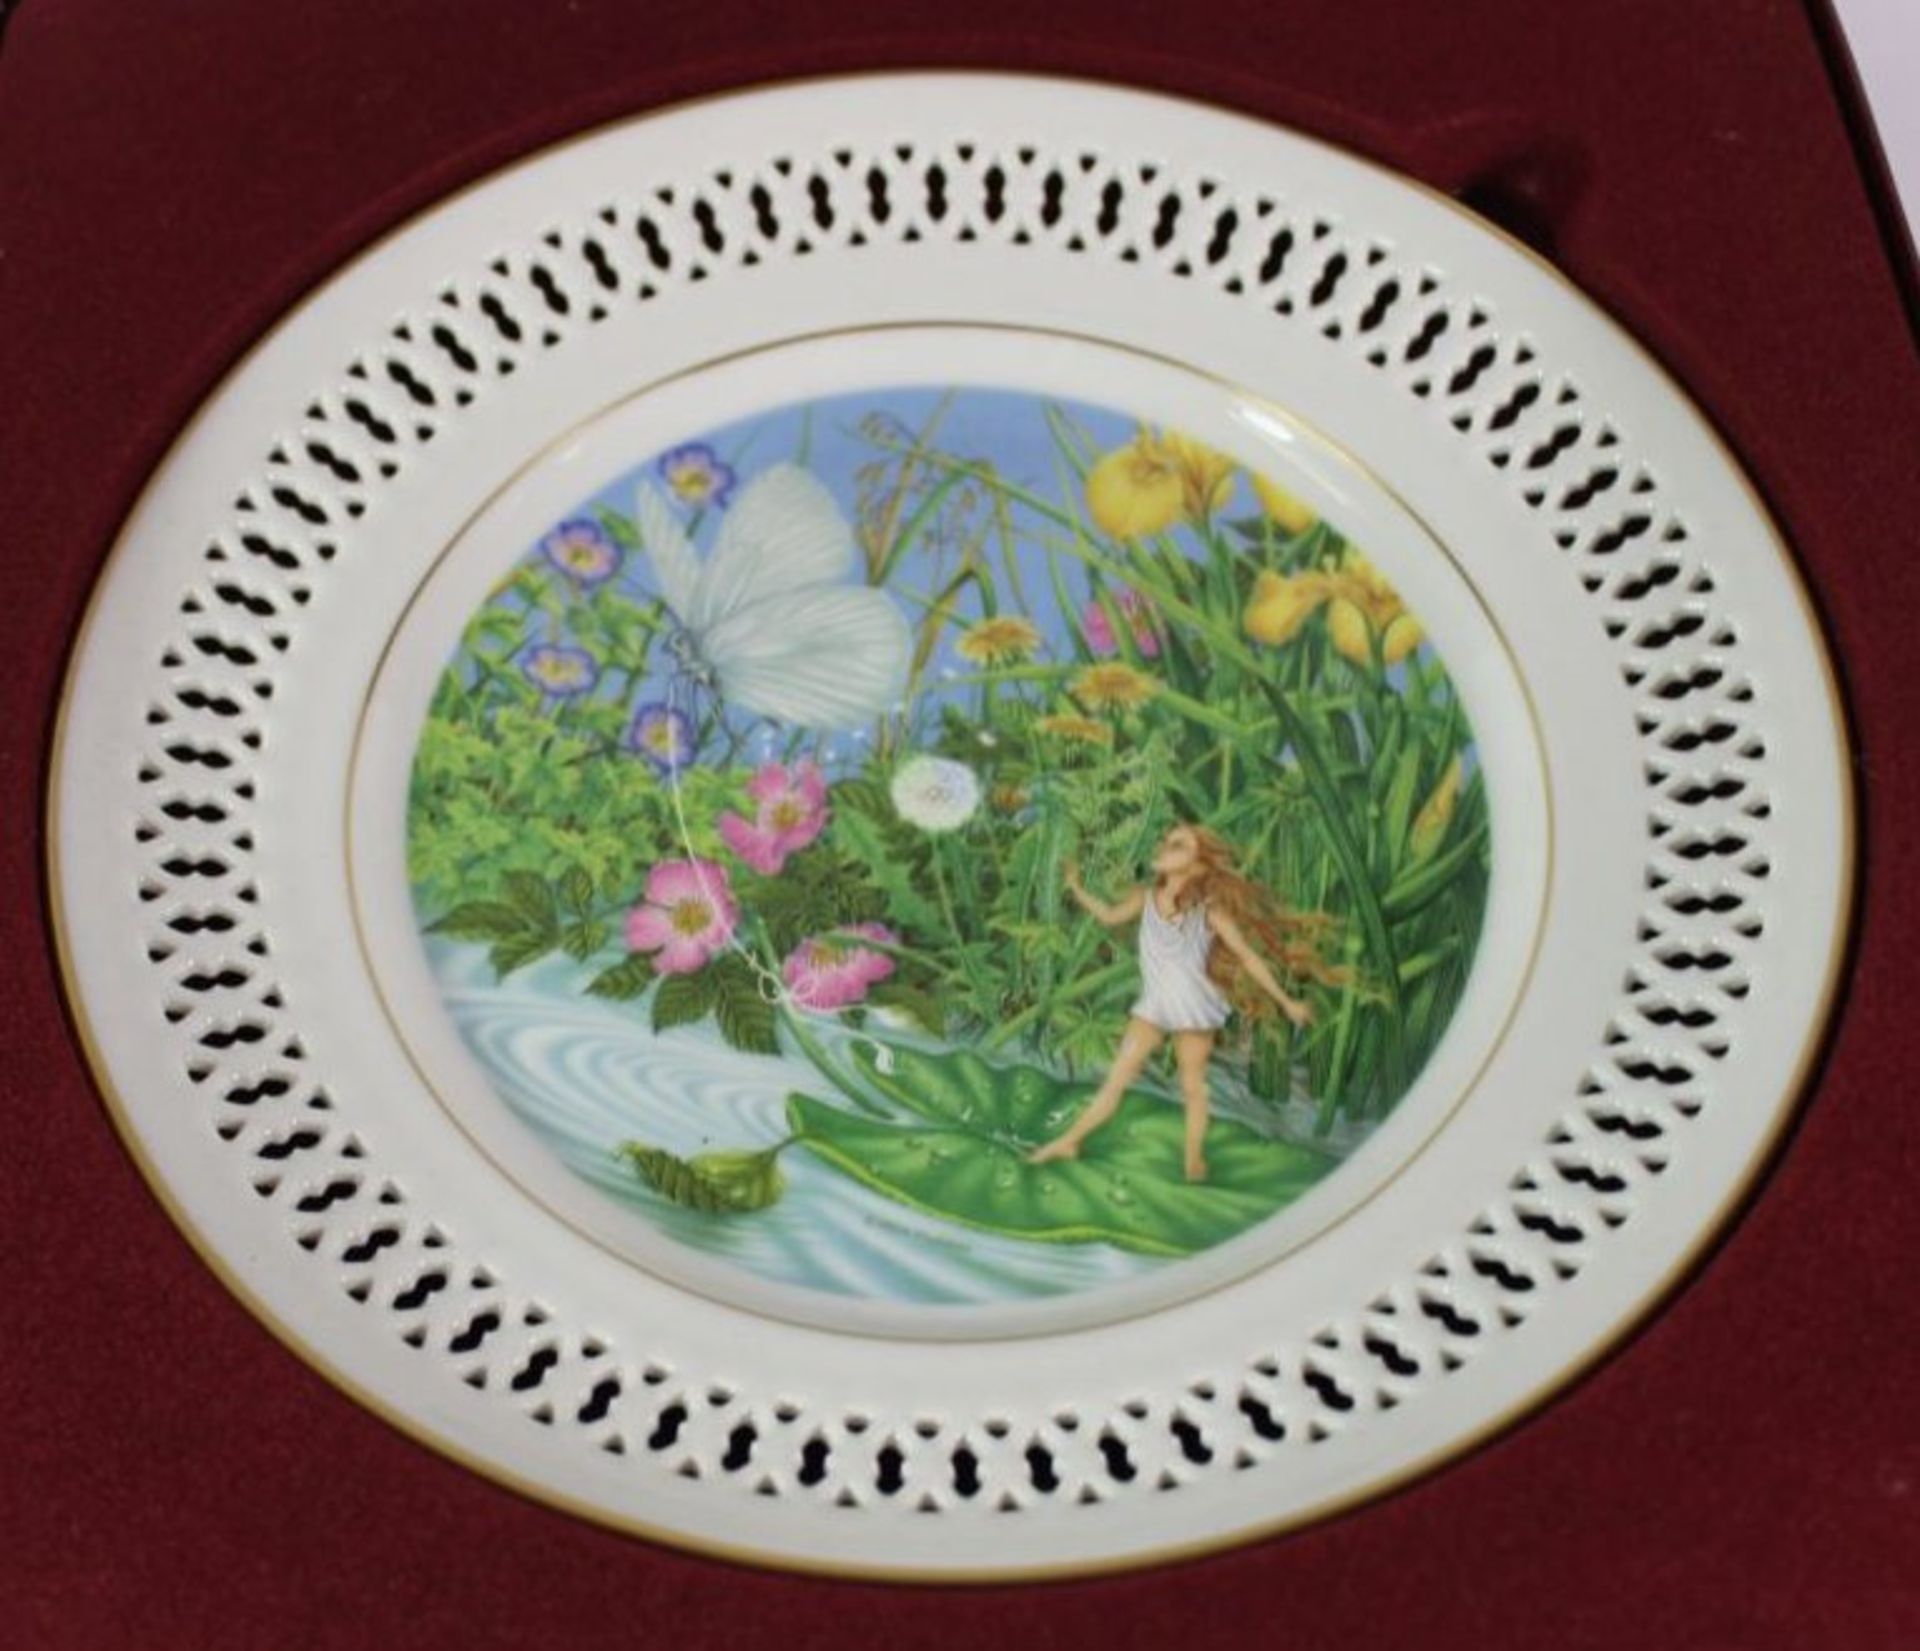 zurückgezogen / withdrawn---6x Märchenteller, Bing und Gröndahl, The Hans Christian Andersen Plate - Bild 2 aus 7